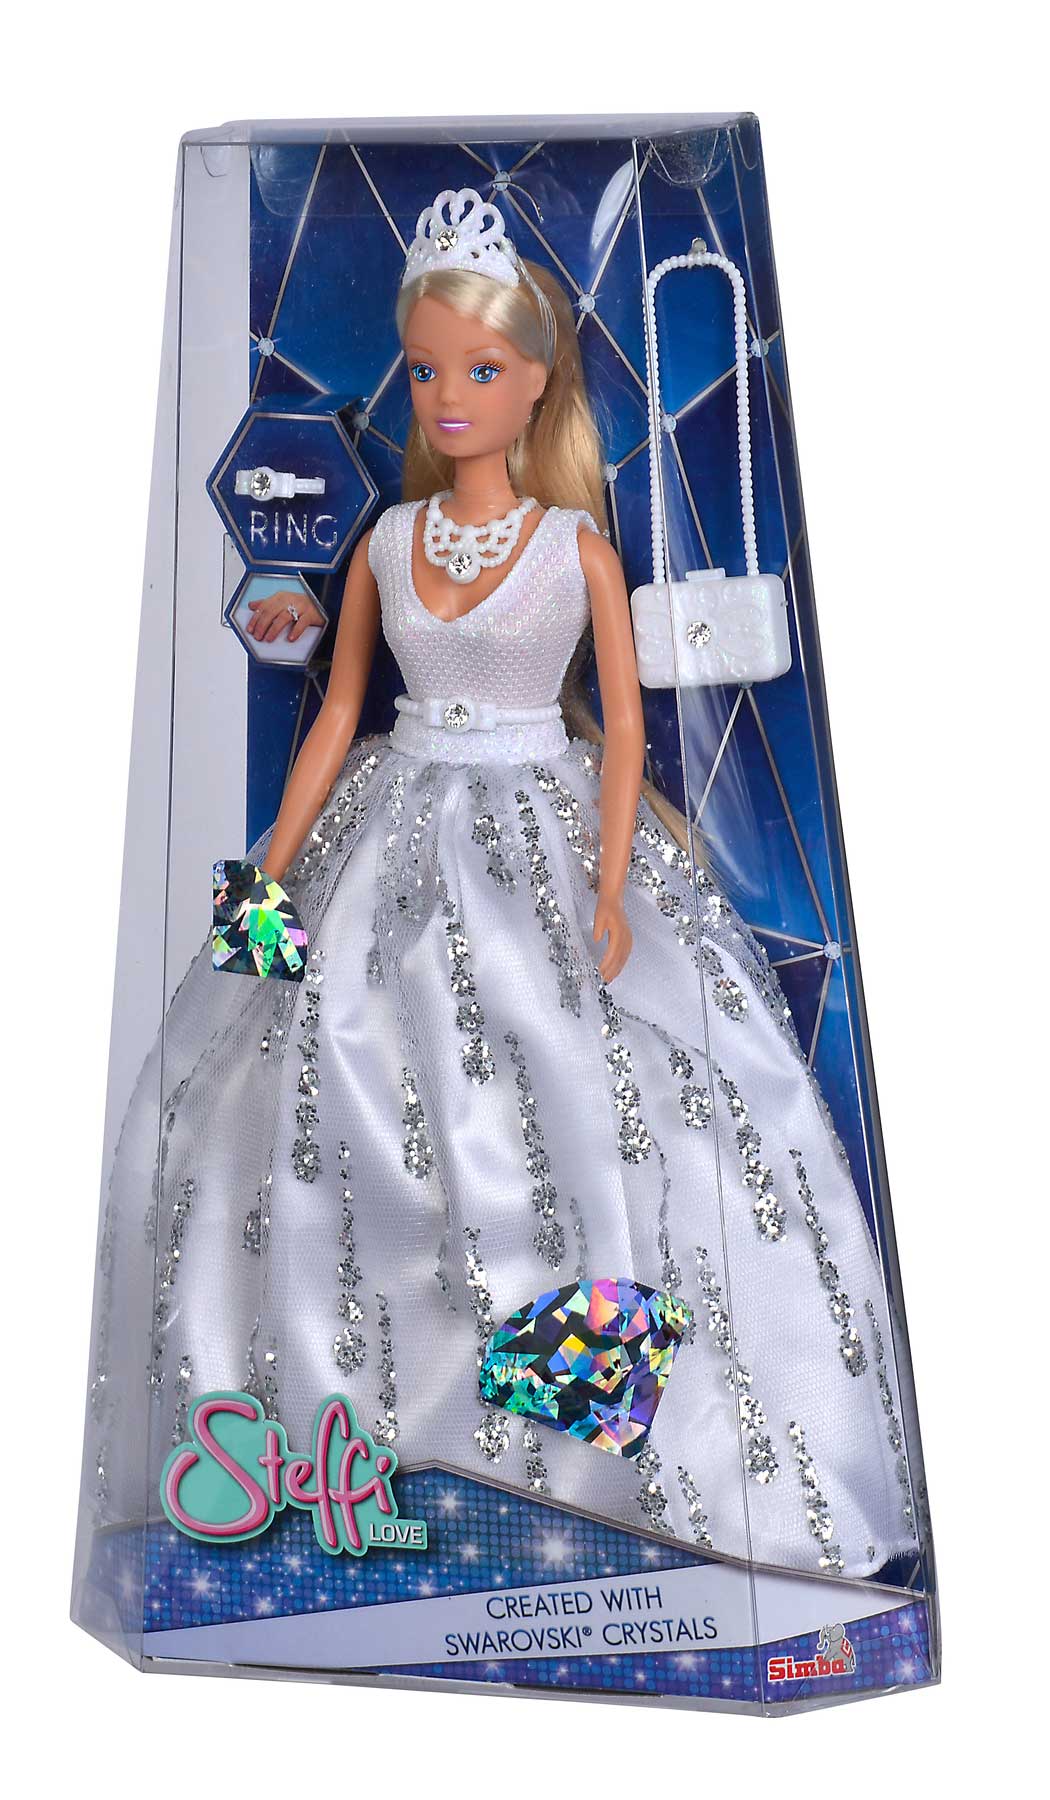 Steffi Love Crystal DeLuxe con accessori creati con cristalli Swarovski, incluso anello bambina